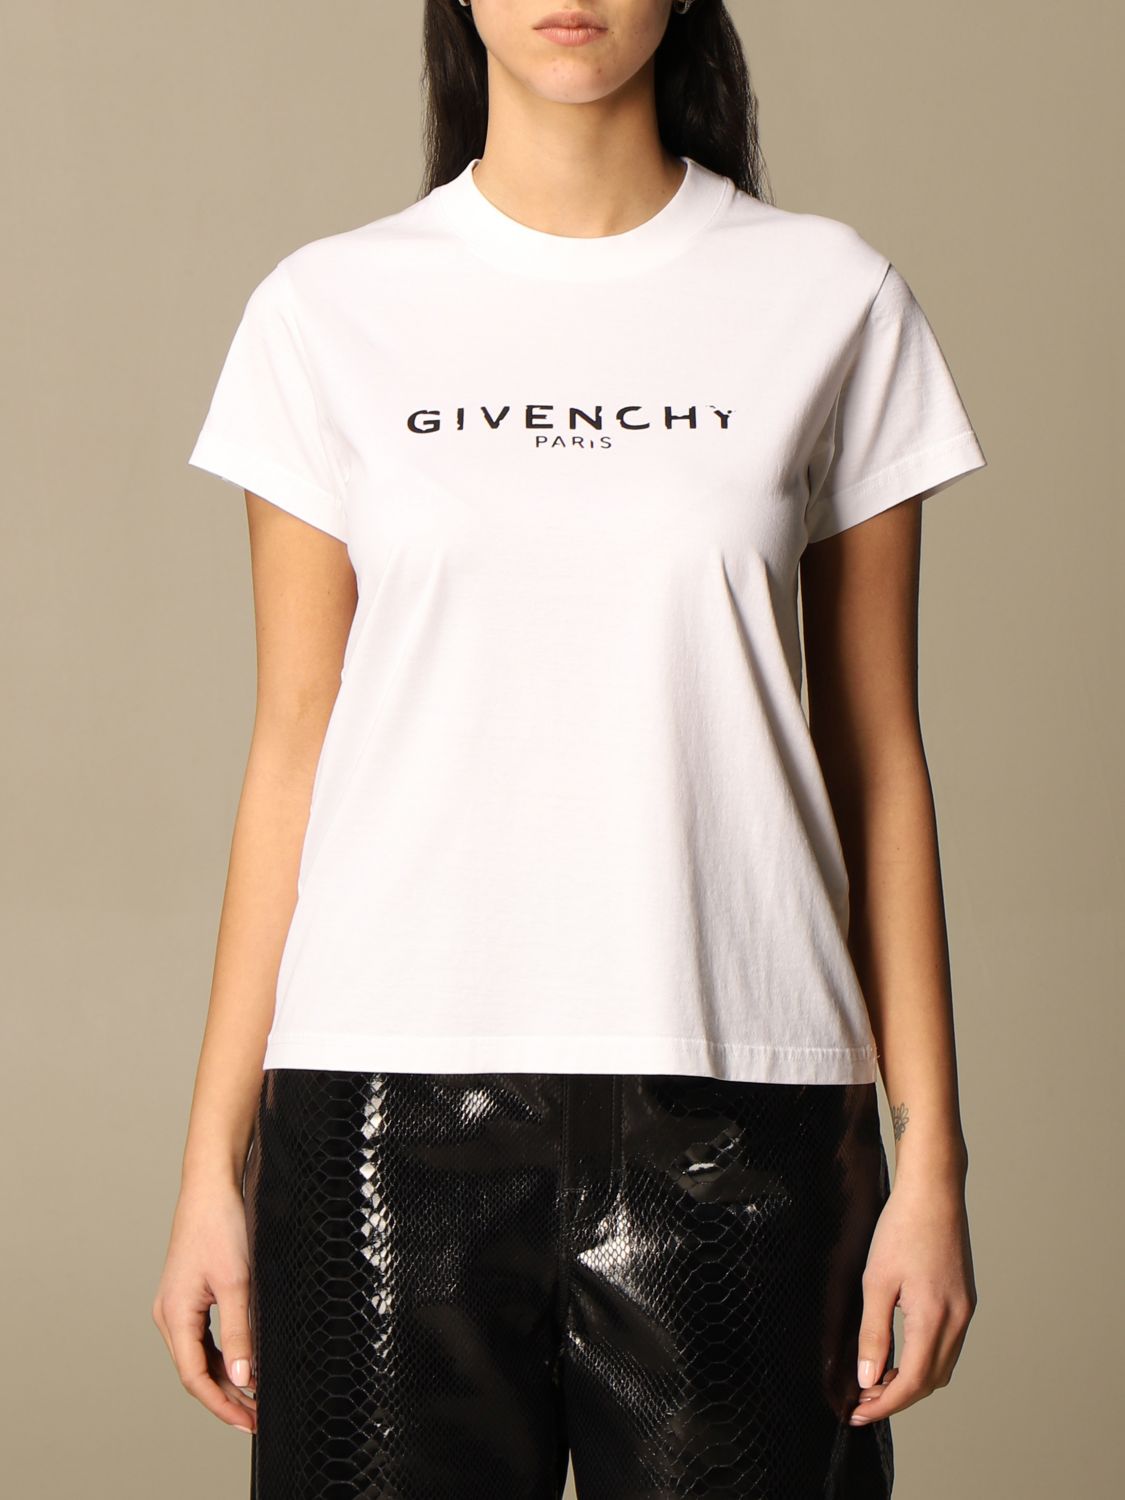 givenchy t shirt women